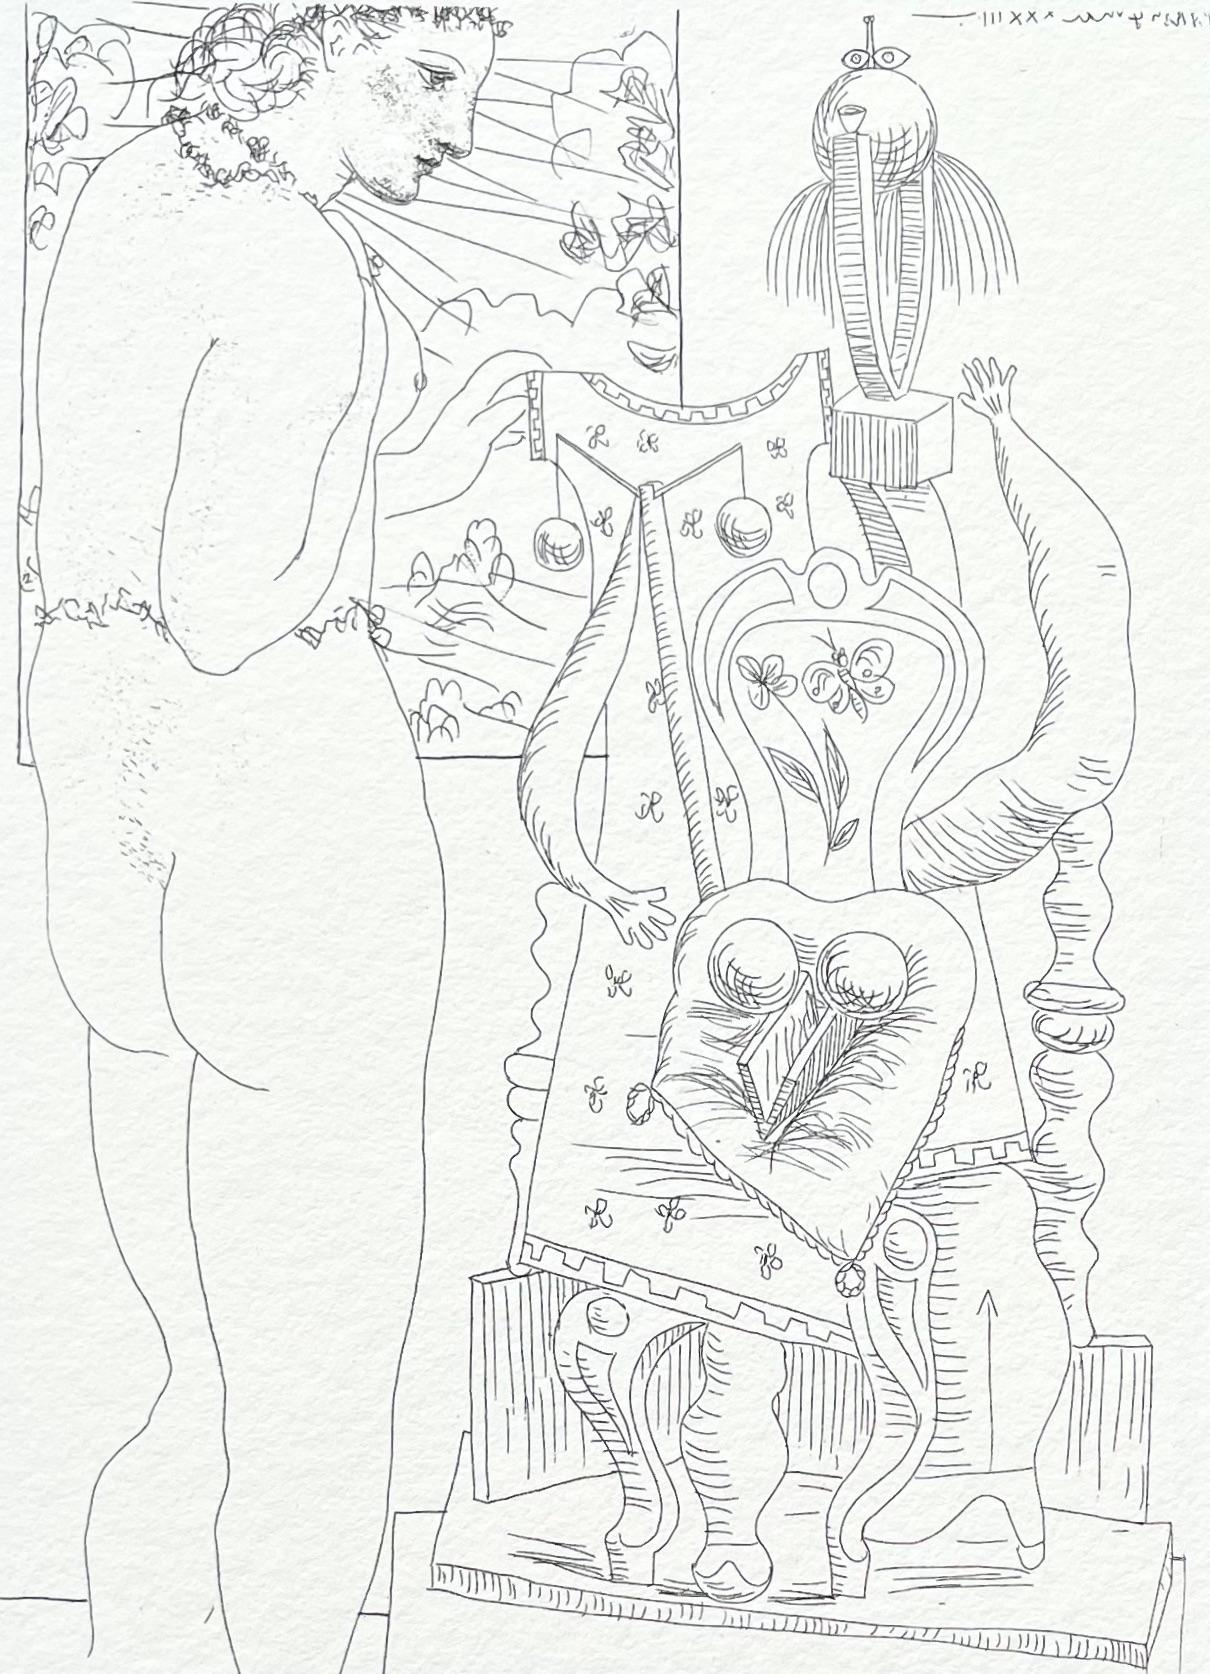 Pablo Picasso Nude Print - Picasso, Marie-Thérèse considérant son Effigie surréaliste sculptée (after)